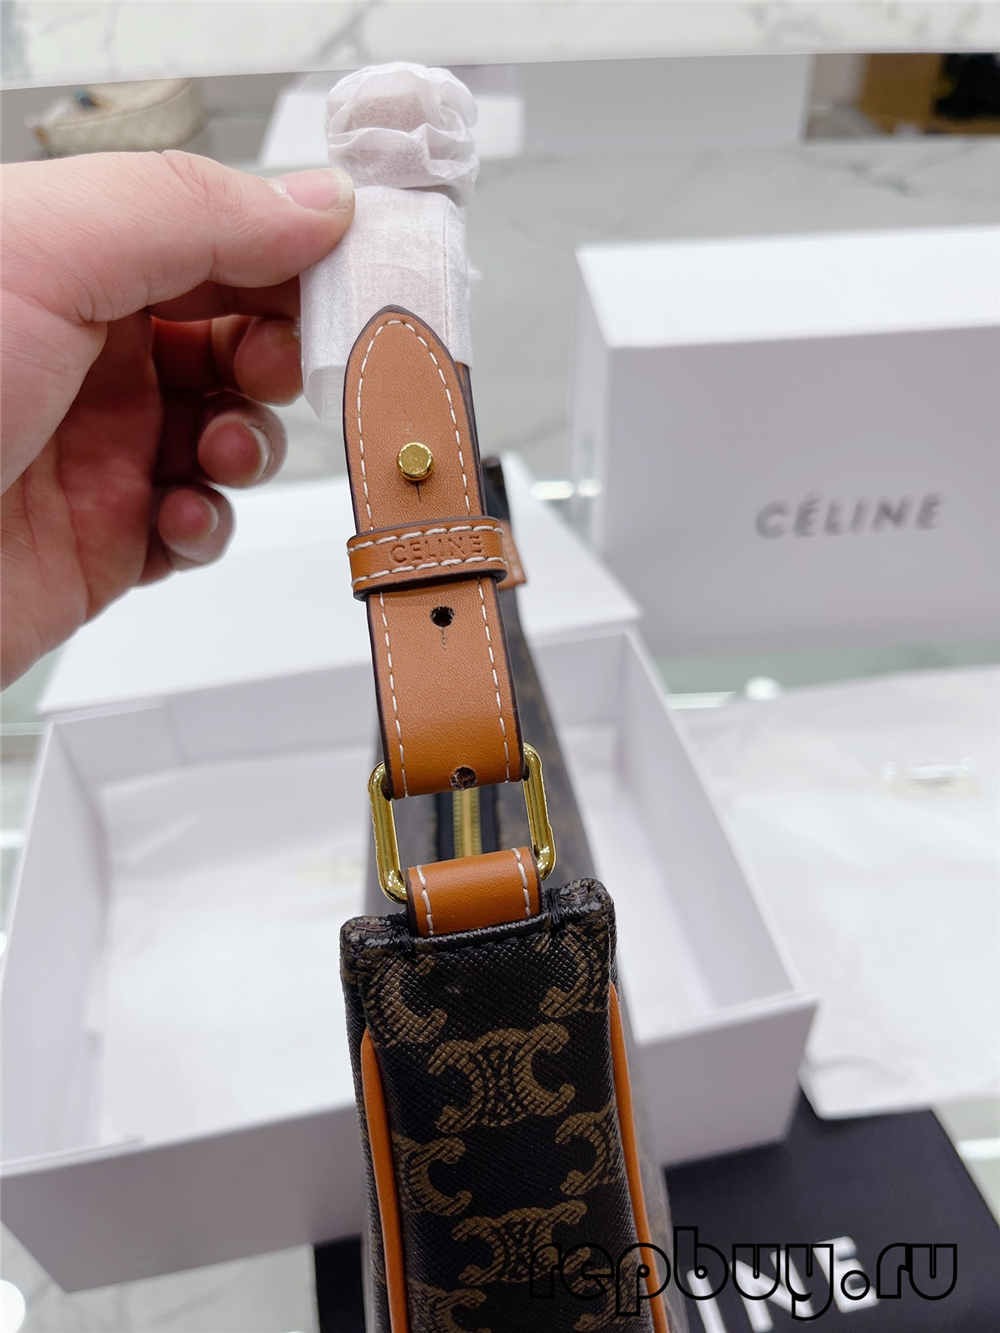 Celine Ava Replika-tasker i bedste kvalitet (seneste 2022)-Bedste kvalitet falske Louis Vuitton-taske onlinebutik, kopi designertaske ru